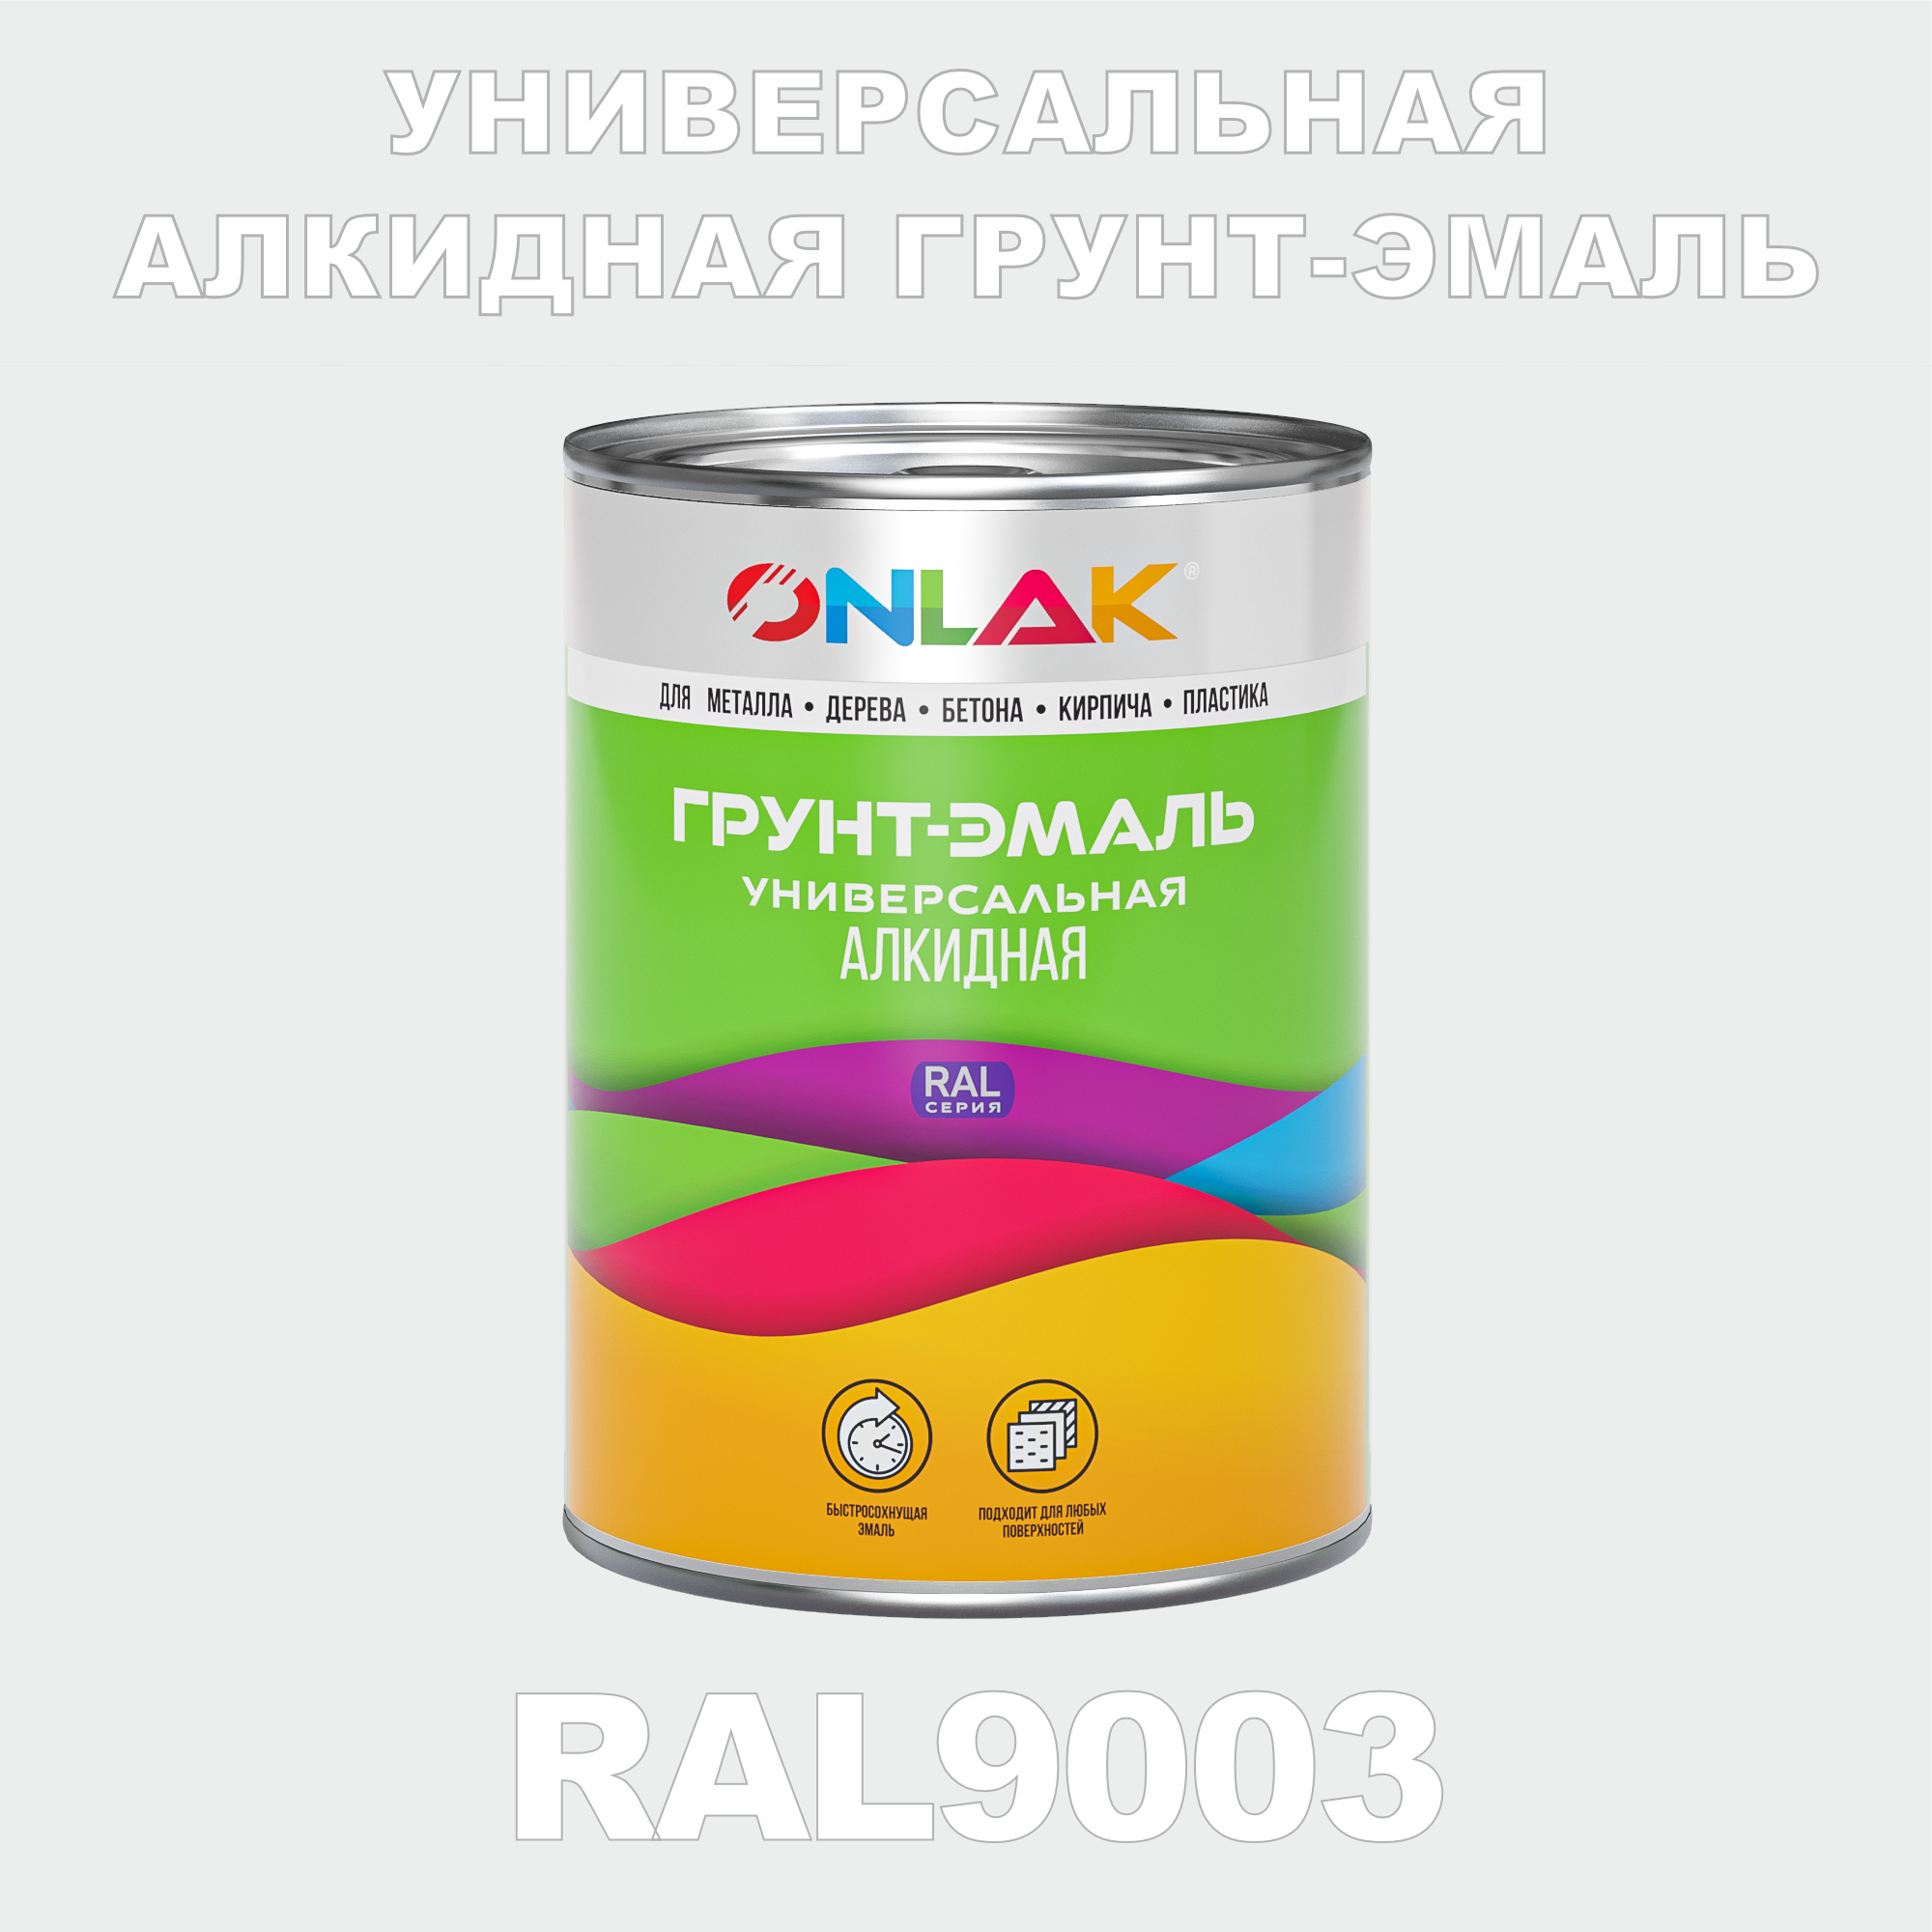 Грунт-эмаль ONLAK 1К RAL9003 антикоррозионная алкидная по металлу по ржавчине 1 кг грунт эмаль yollo по ржавчине алкидная белая 0 9 кг